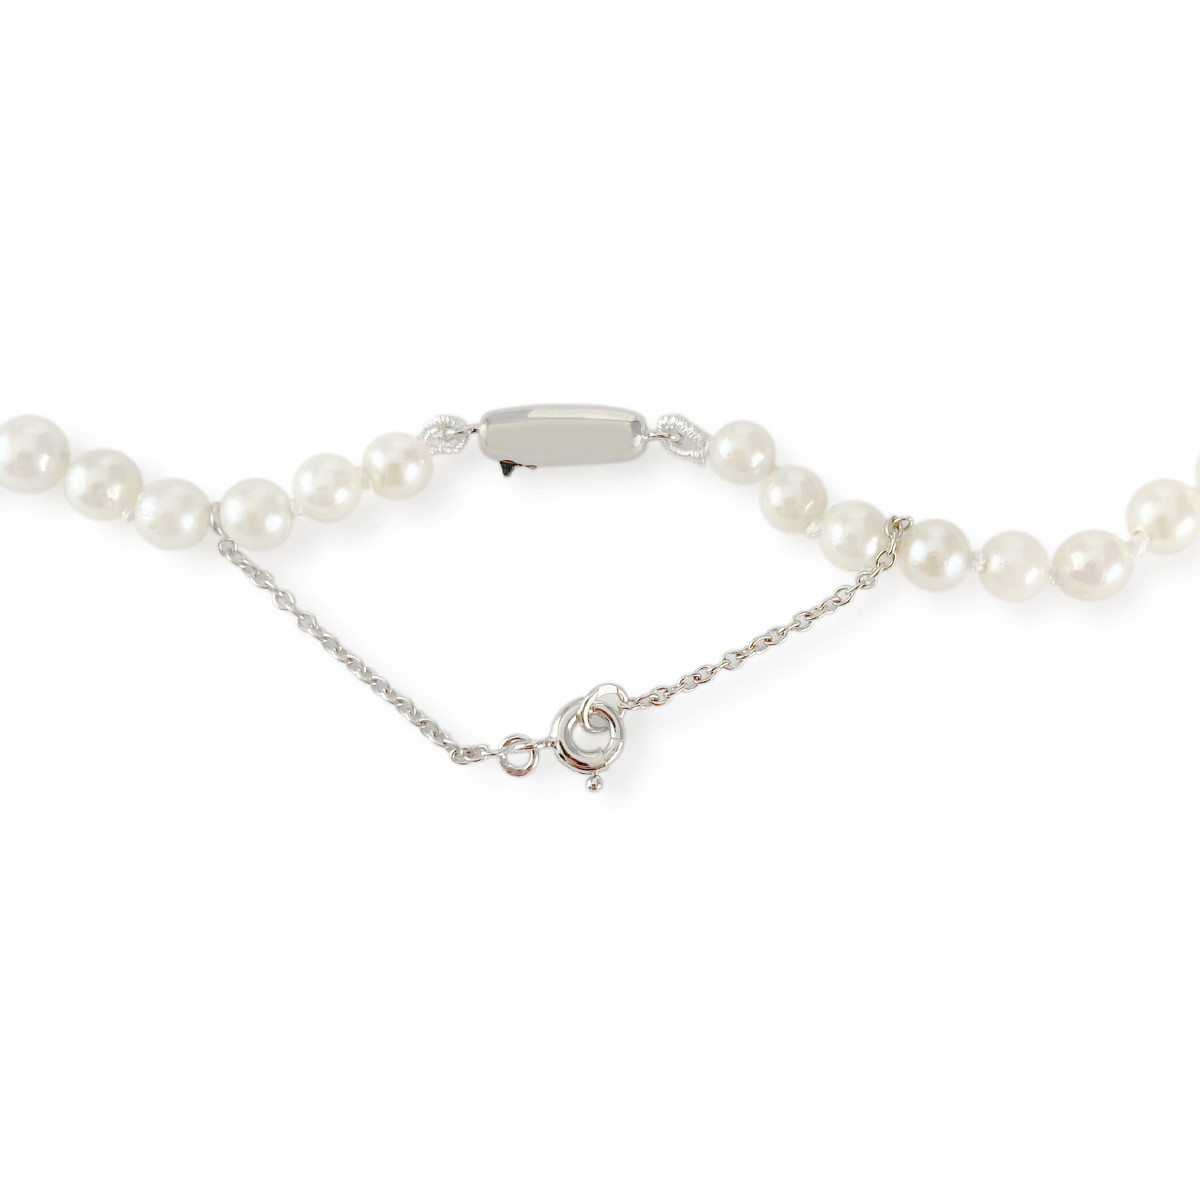 Collier en chute d'occasion or 750 blanc perles du japon 50 cm - vue 3